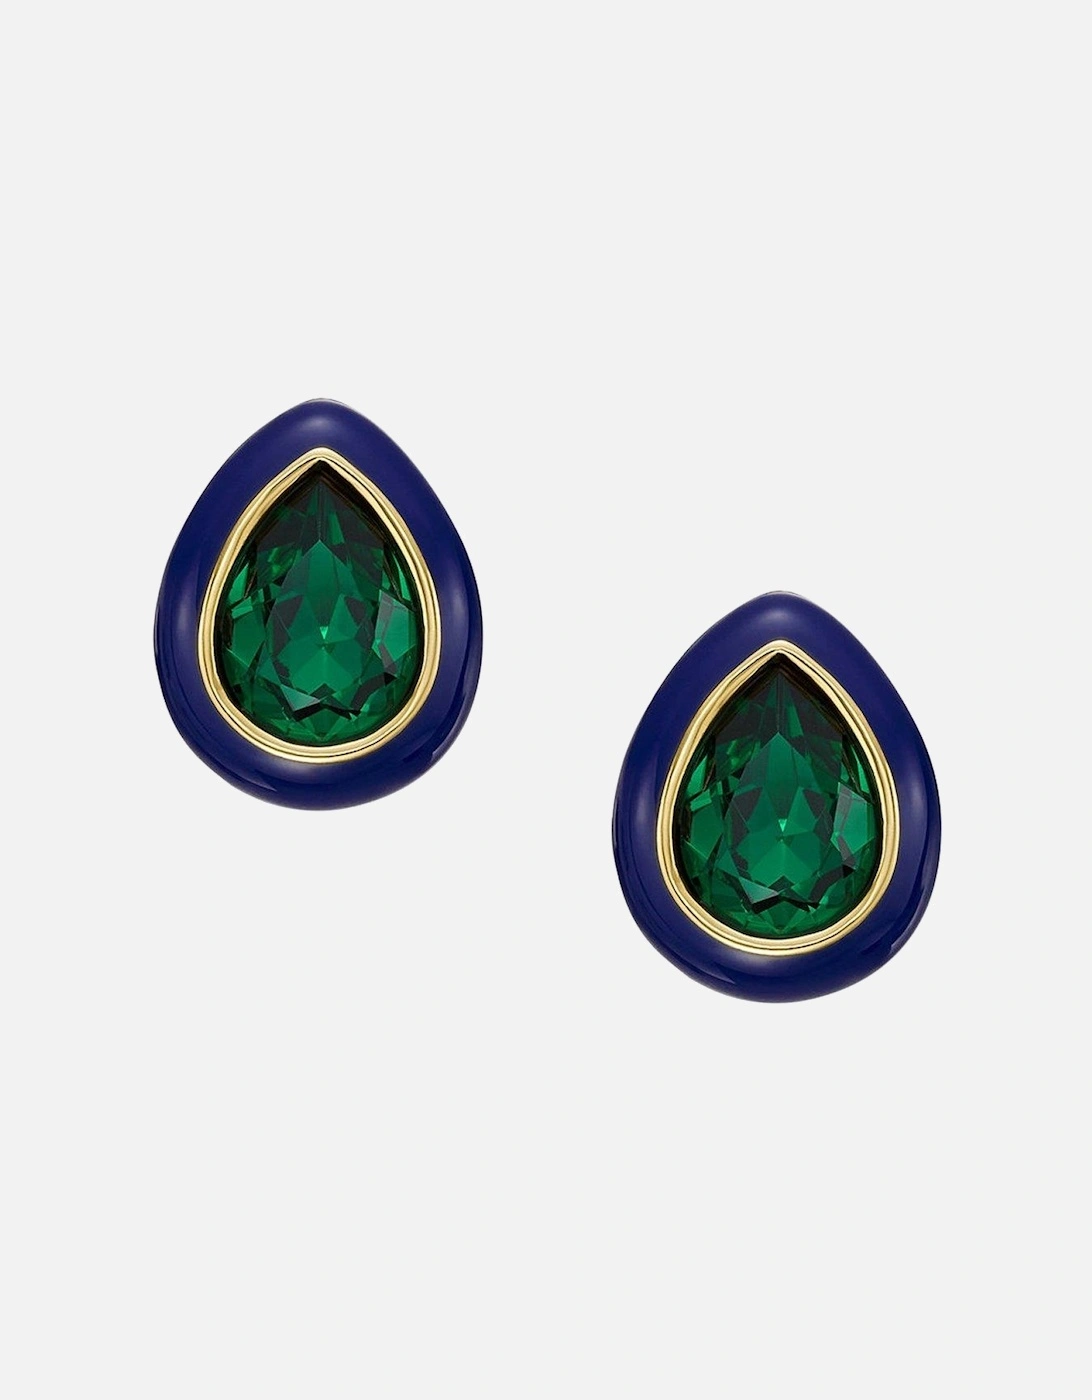 Green Crystal and Enamel Earrings, 2 of 1